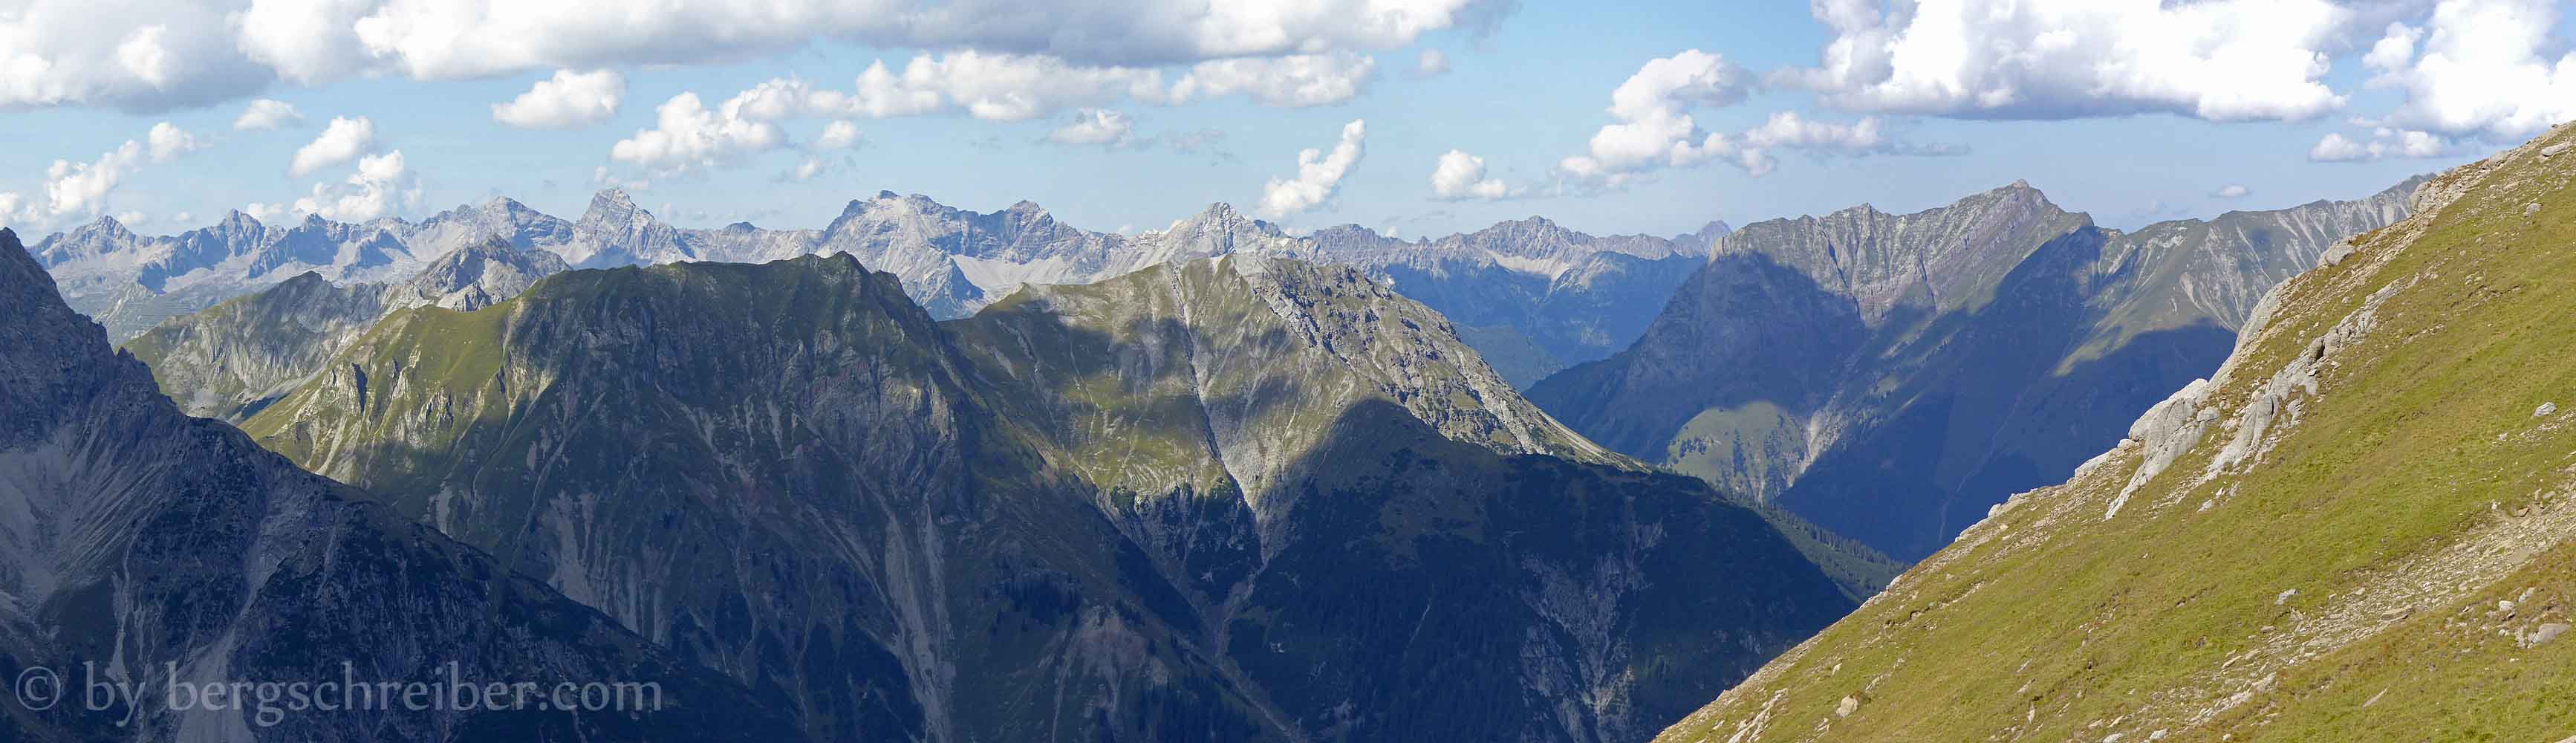 Galtseitejoch - die Hornbachkette im Zoom der Kamera